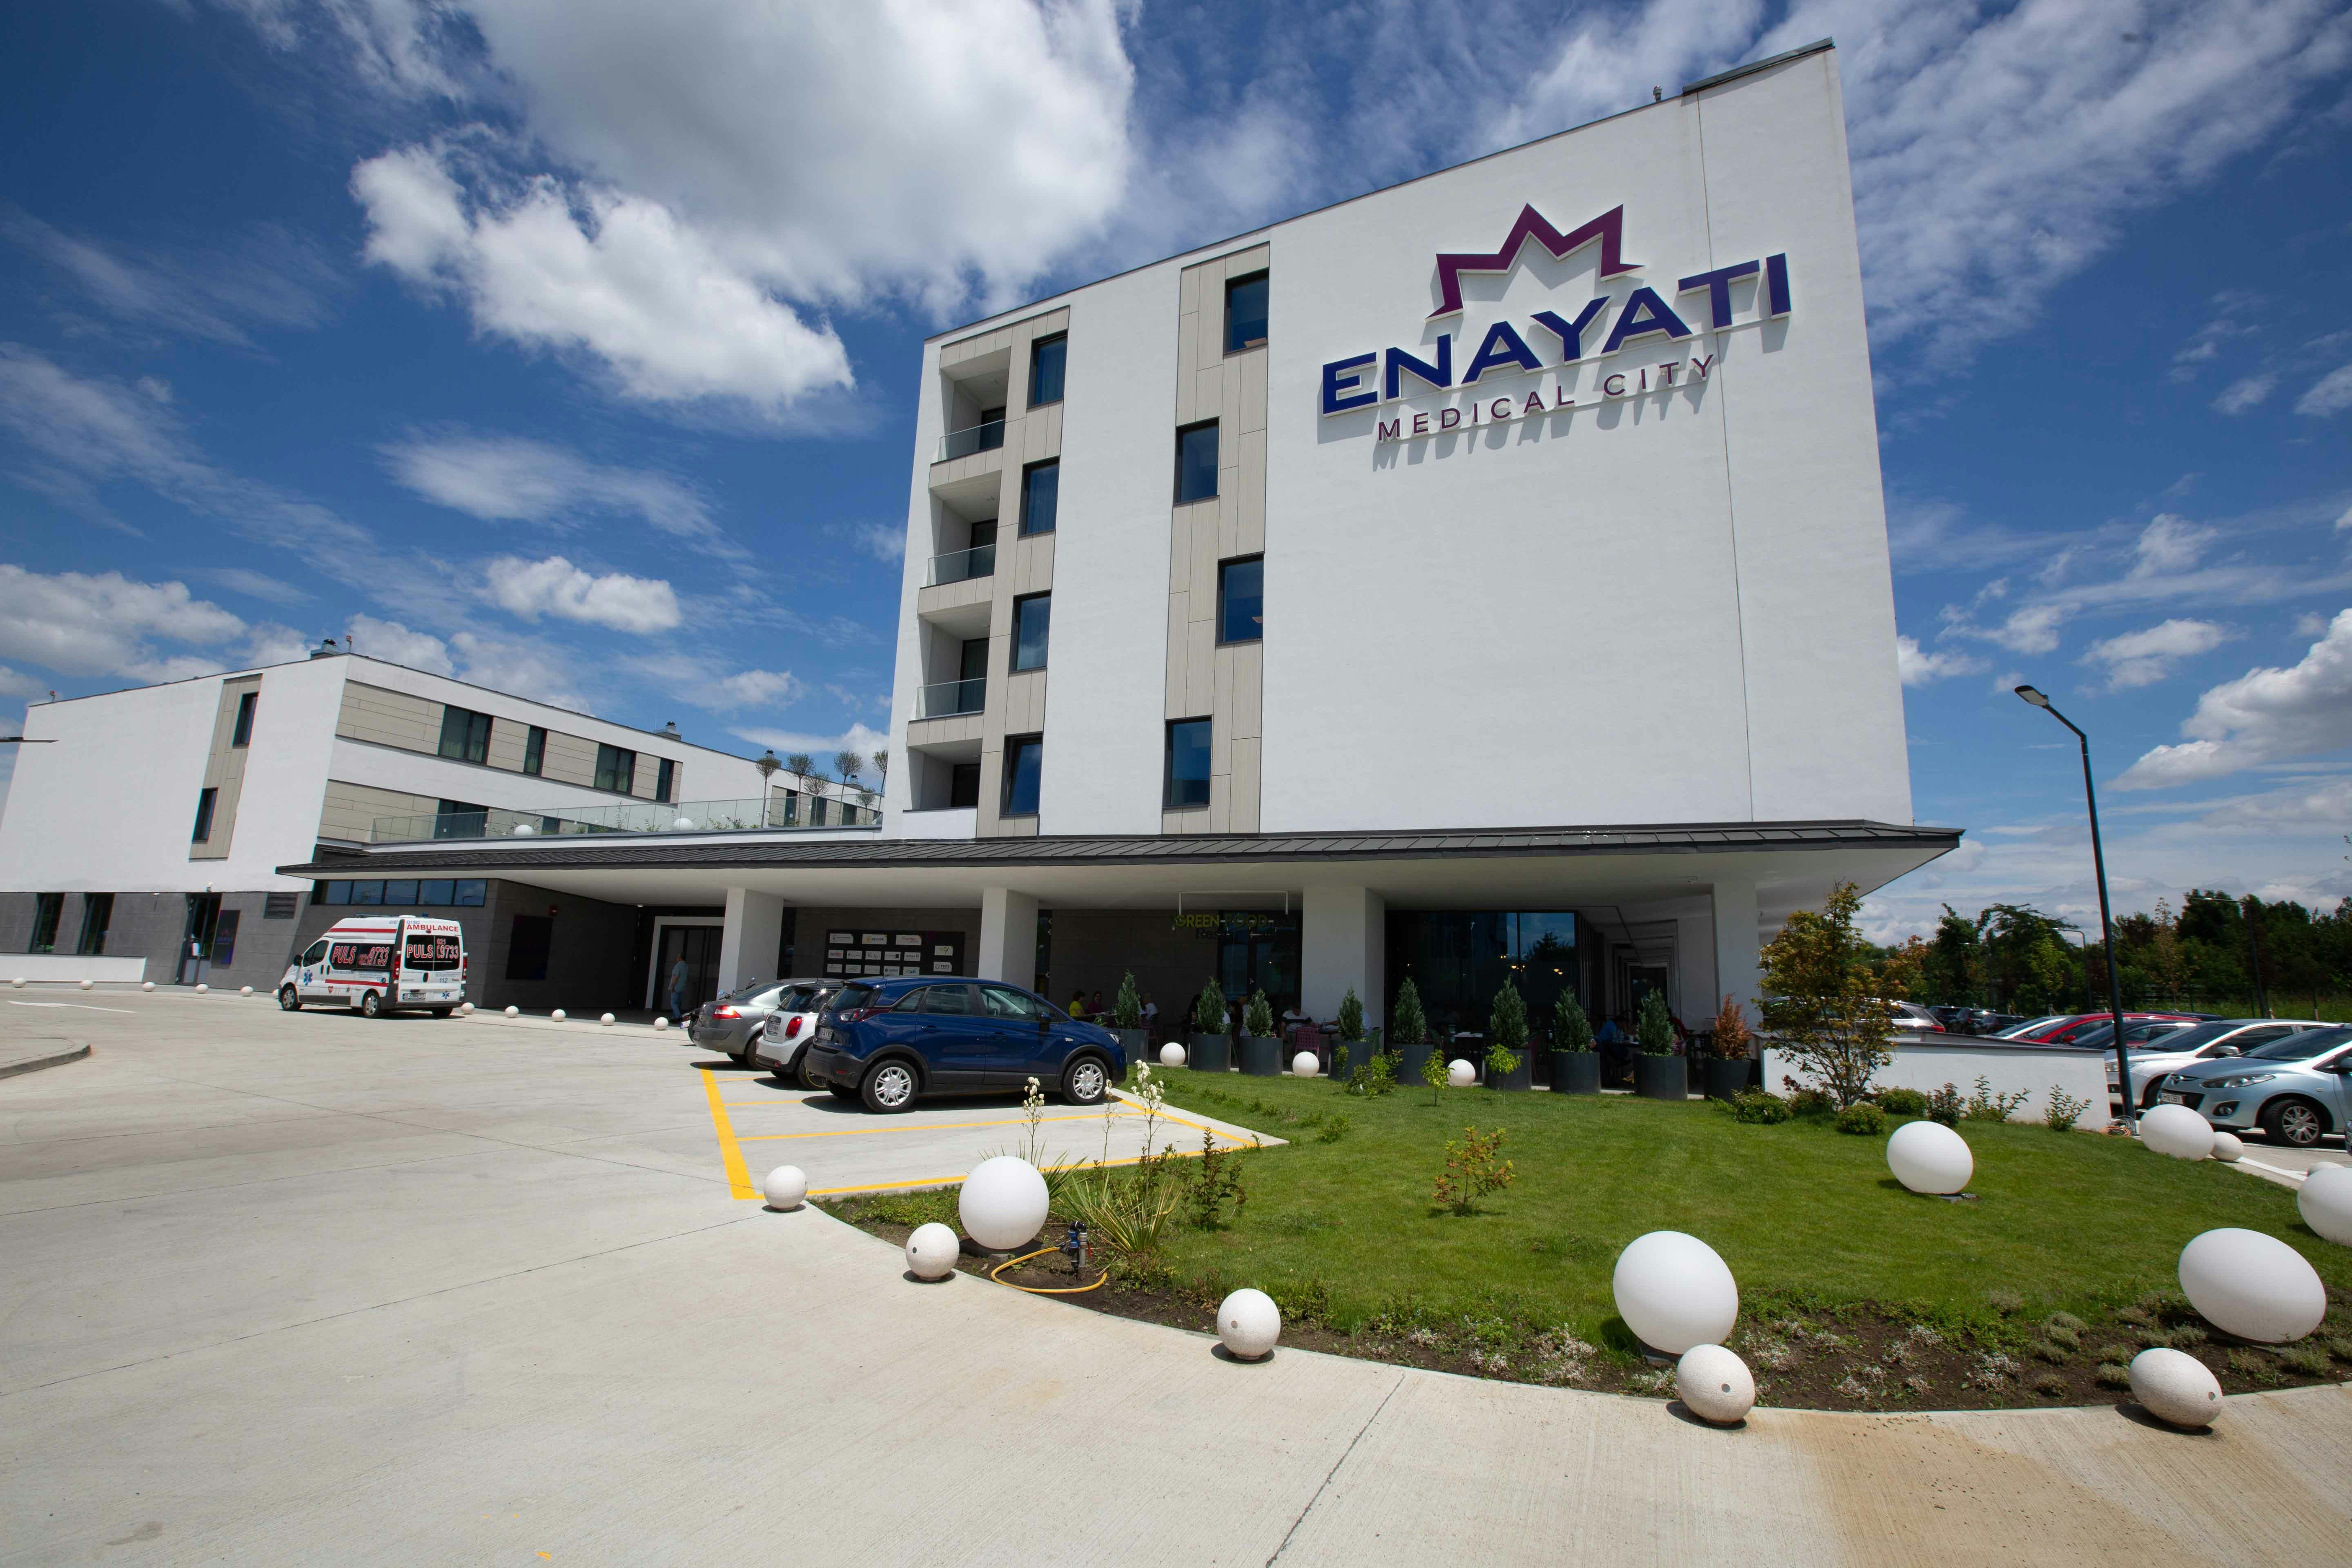 ARES aduce proceduri de top în cardiologie și radiologie intervențională în Enayati Medical City